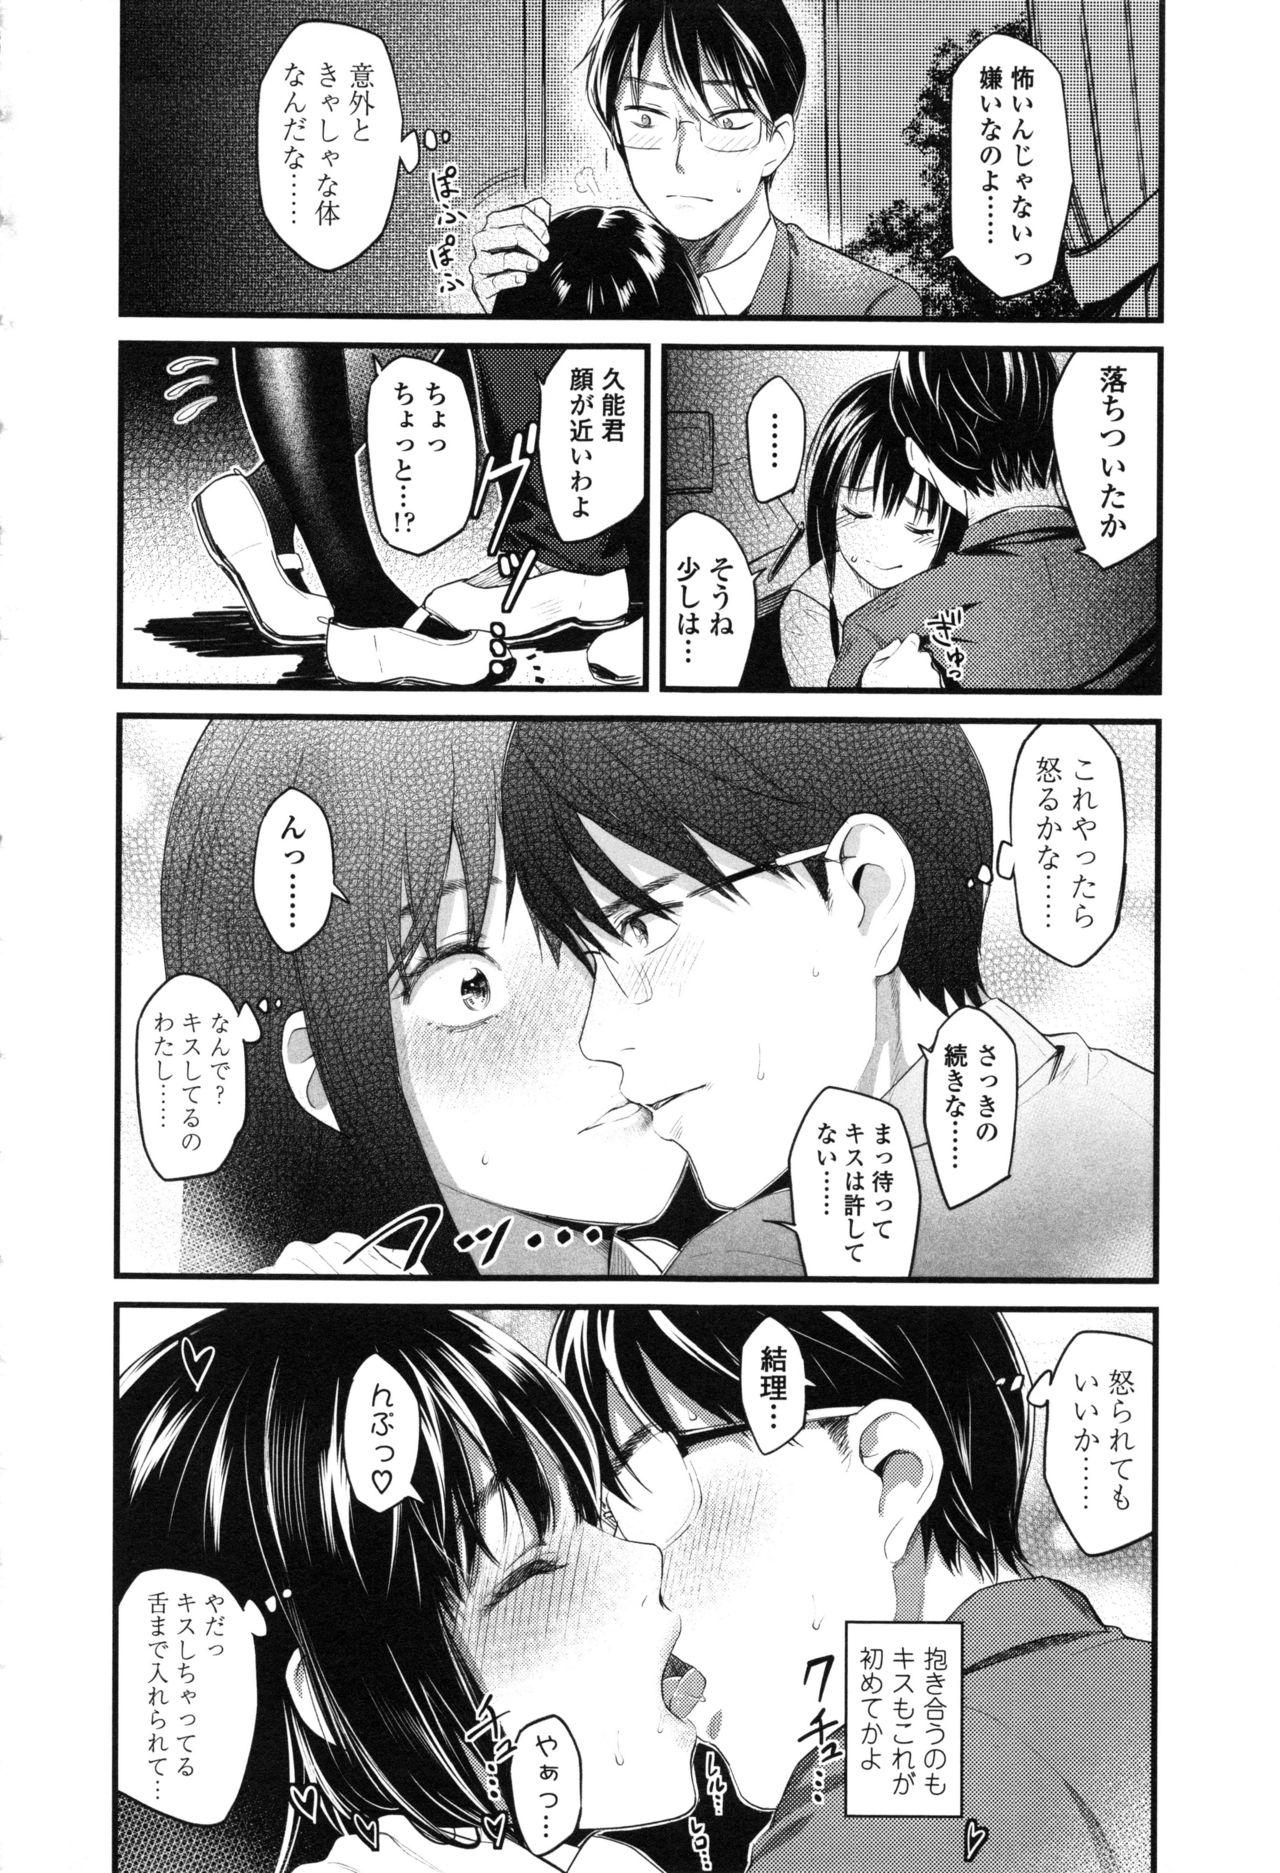 Seifuku no Mama Aishinasai! - Love in school uniform 51